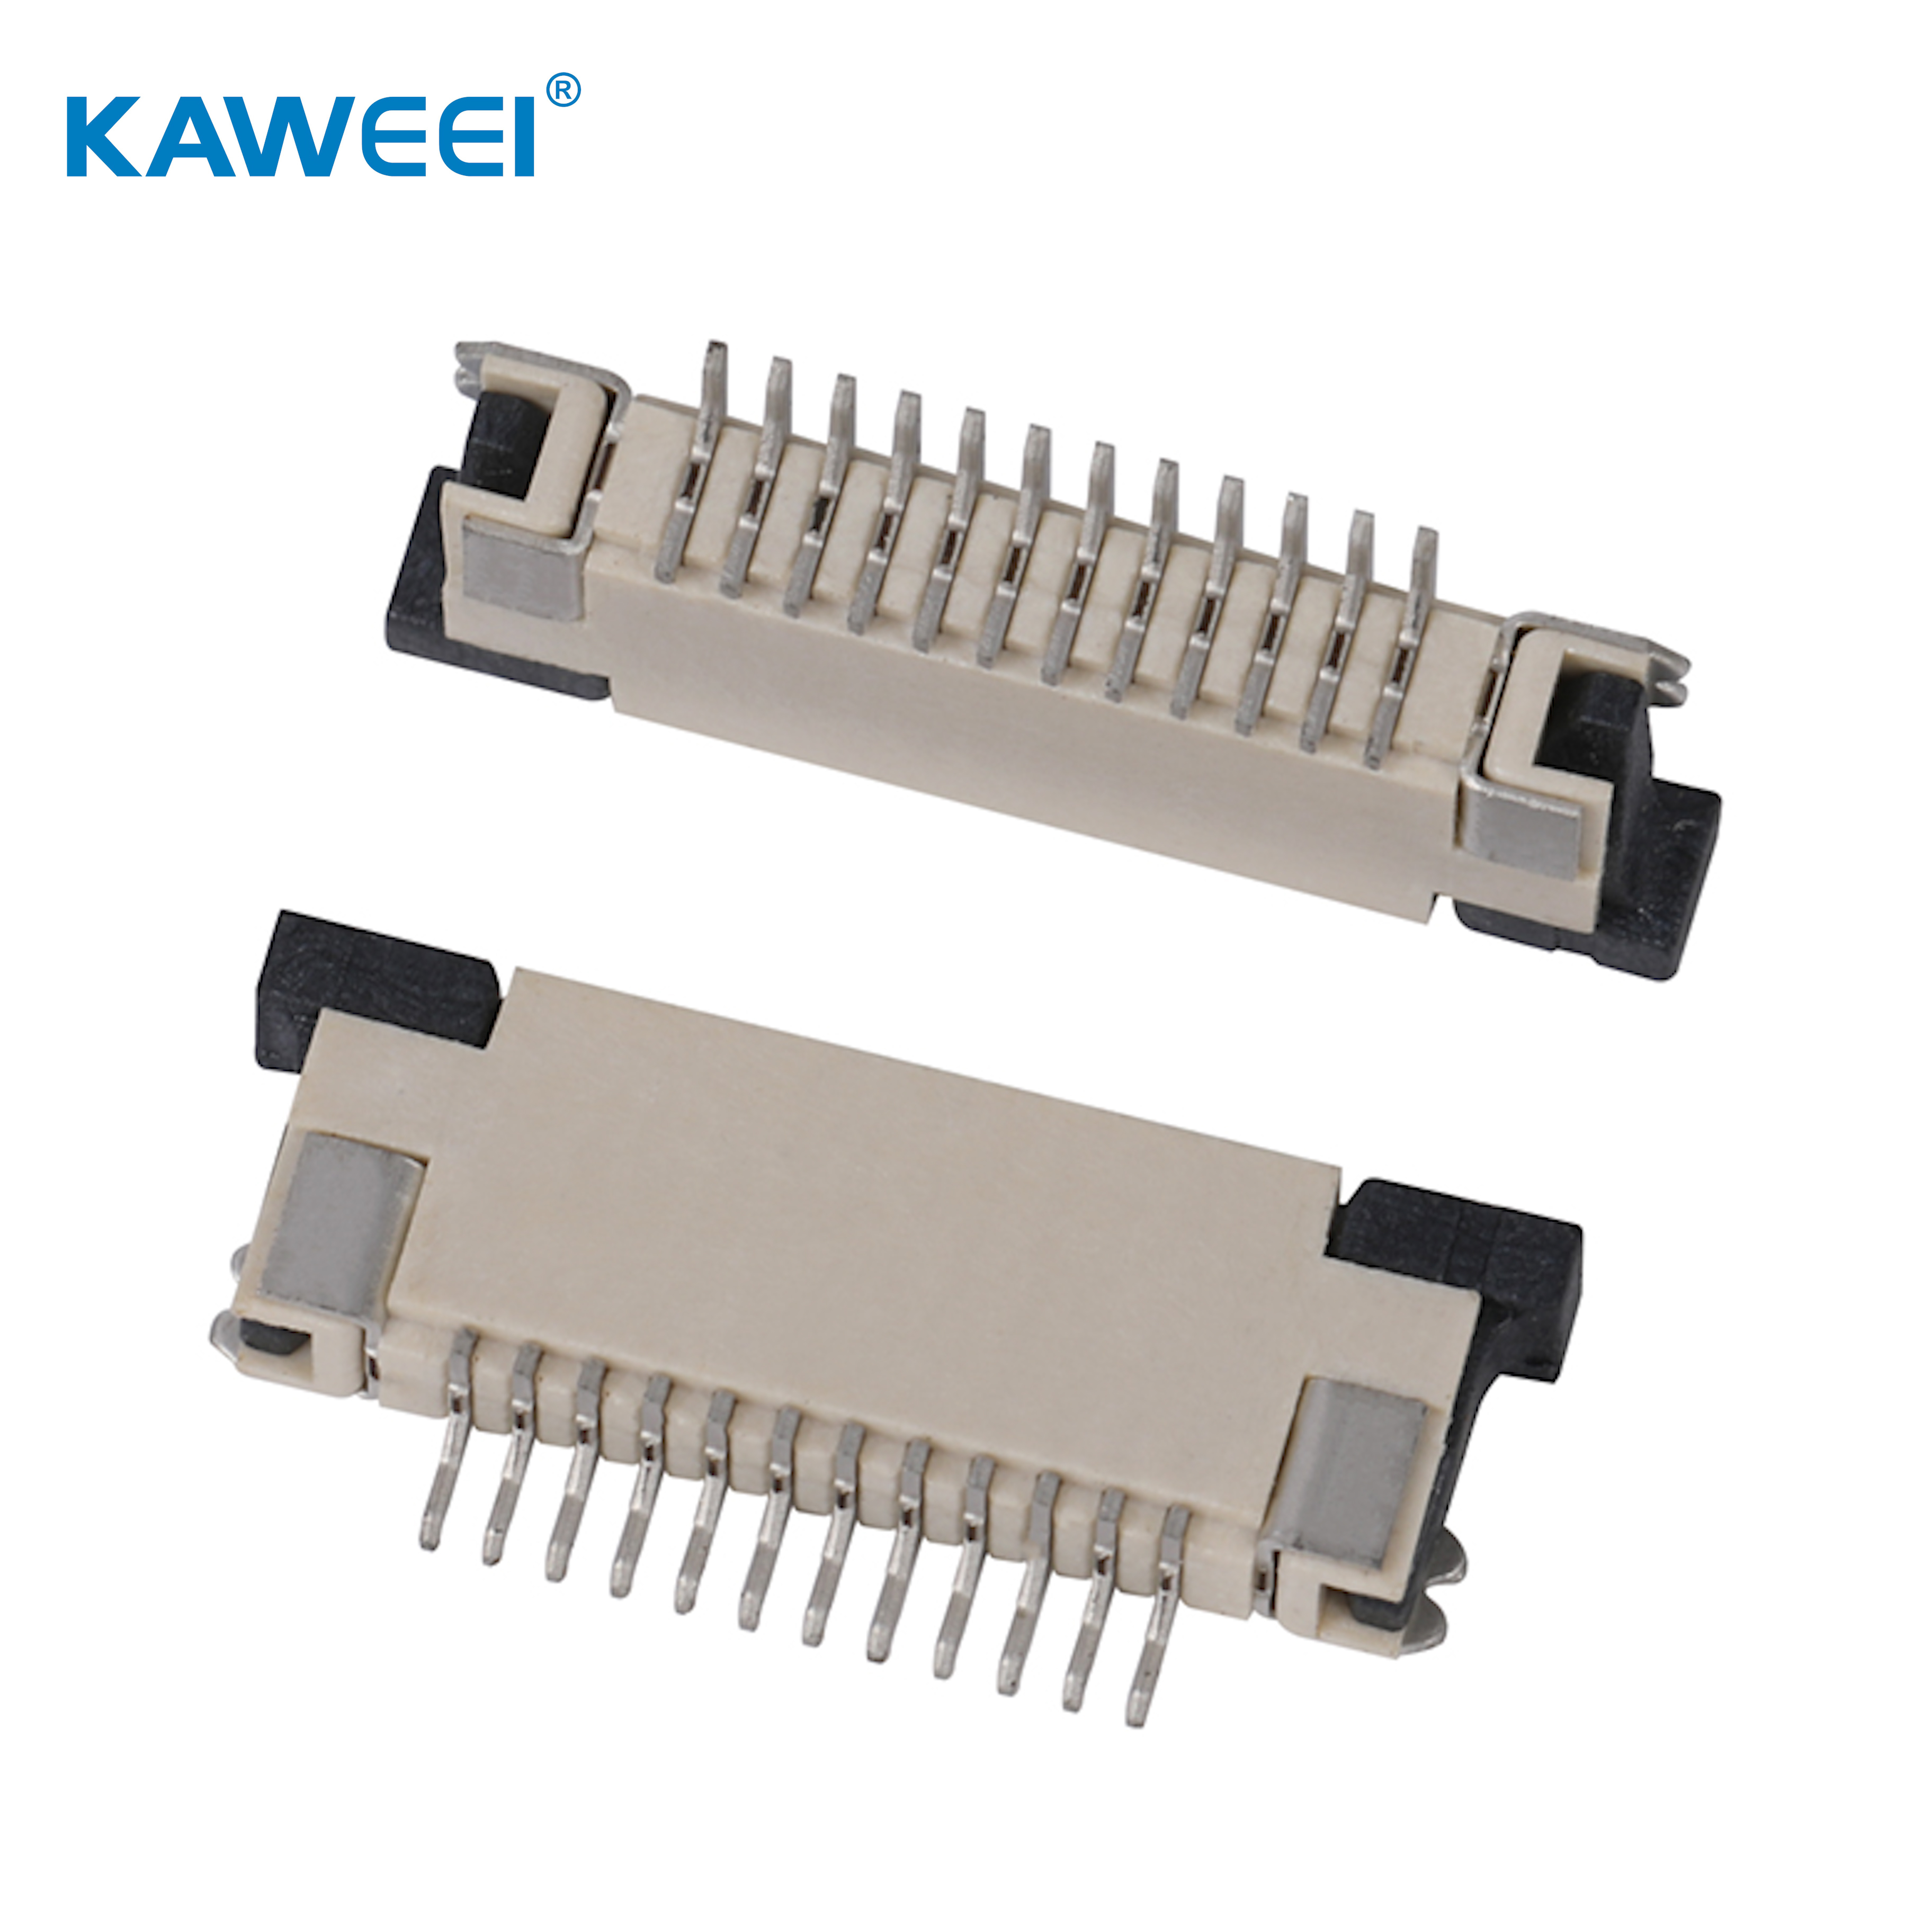 1,0 mm korak ffc/fpc potezni tip SMT konektor gornjeg kontakta žica na konektor ploče